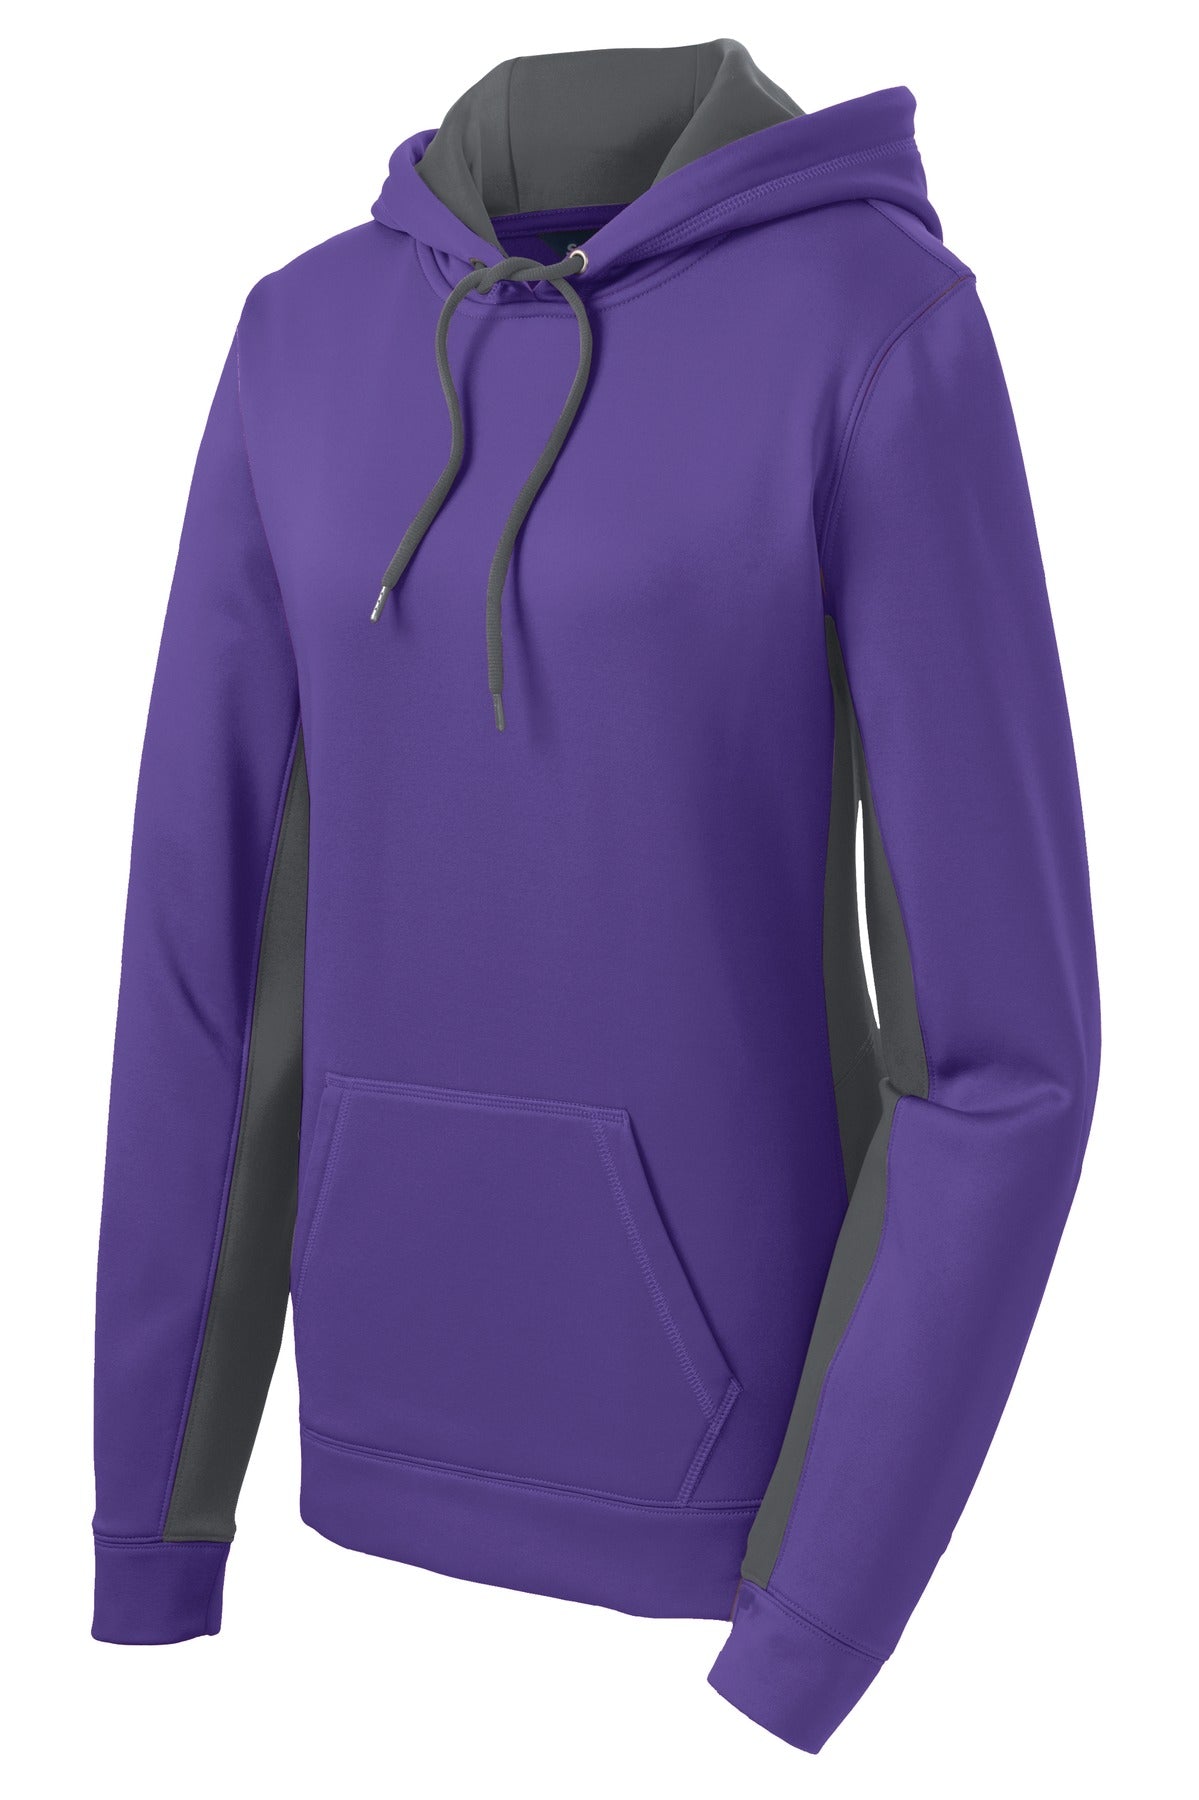 Sport-Tek Ladies Sport-Wick Fleece Colorblock Hooded Pullover. LST235